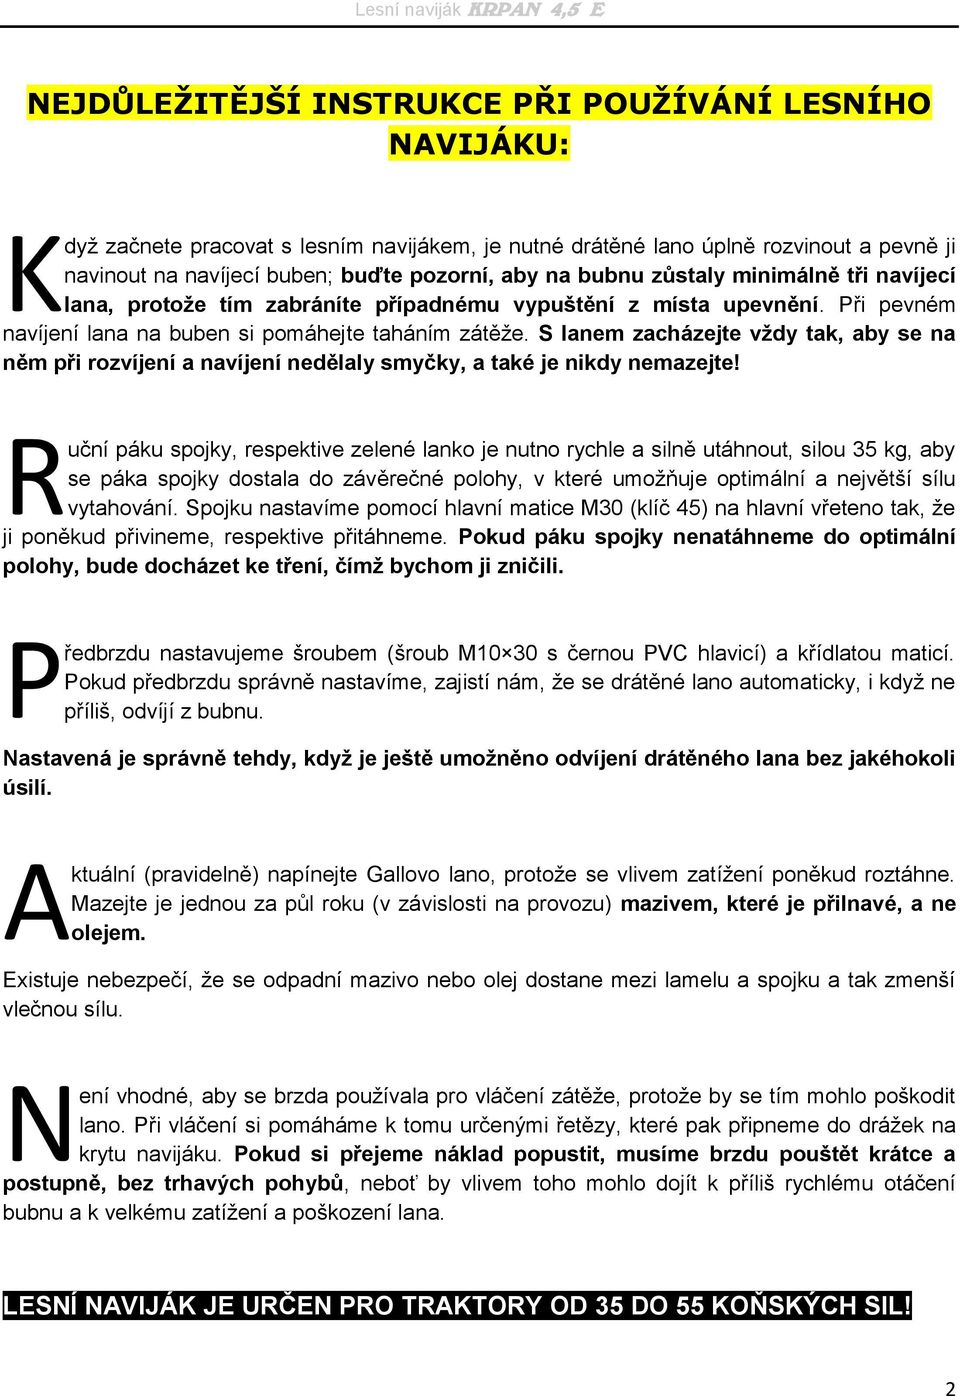 Návod na použití a bezpečnou práci. Pro jednobubnový lesní naviják KRPAN  4,5 E. Před montáží a použitím si pozorně přečtěte návod na použití! - PDF  Stažení zdarma